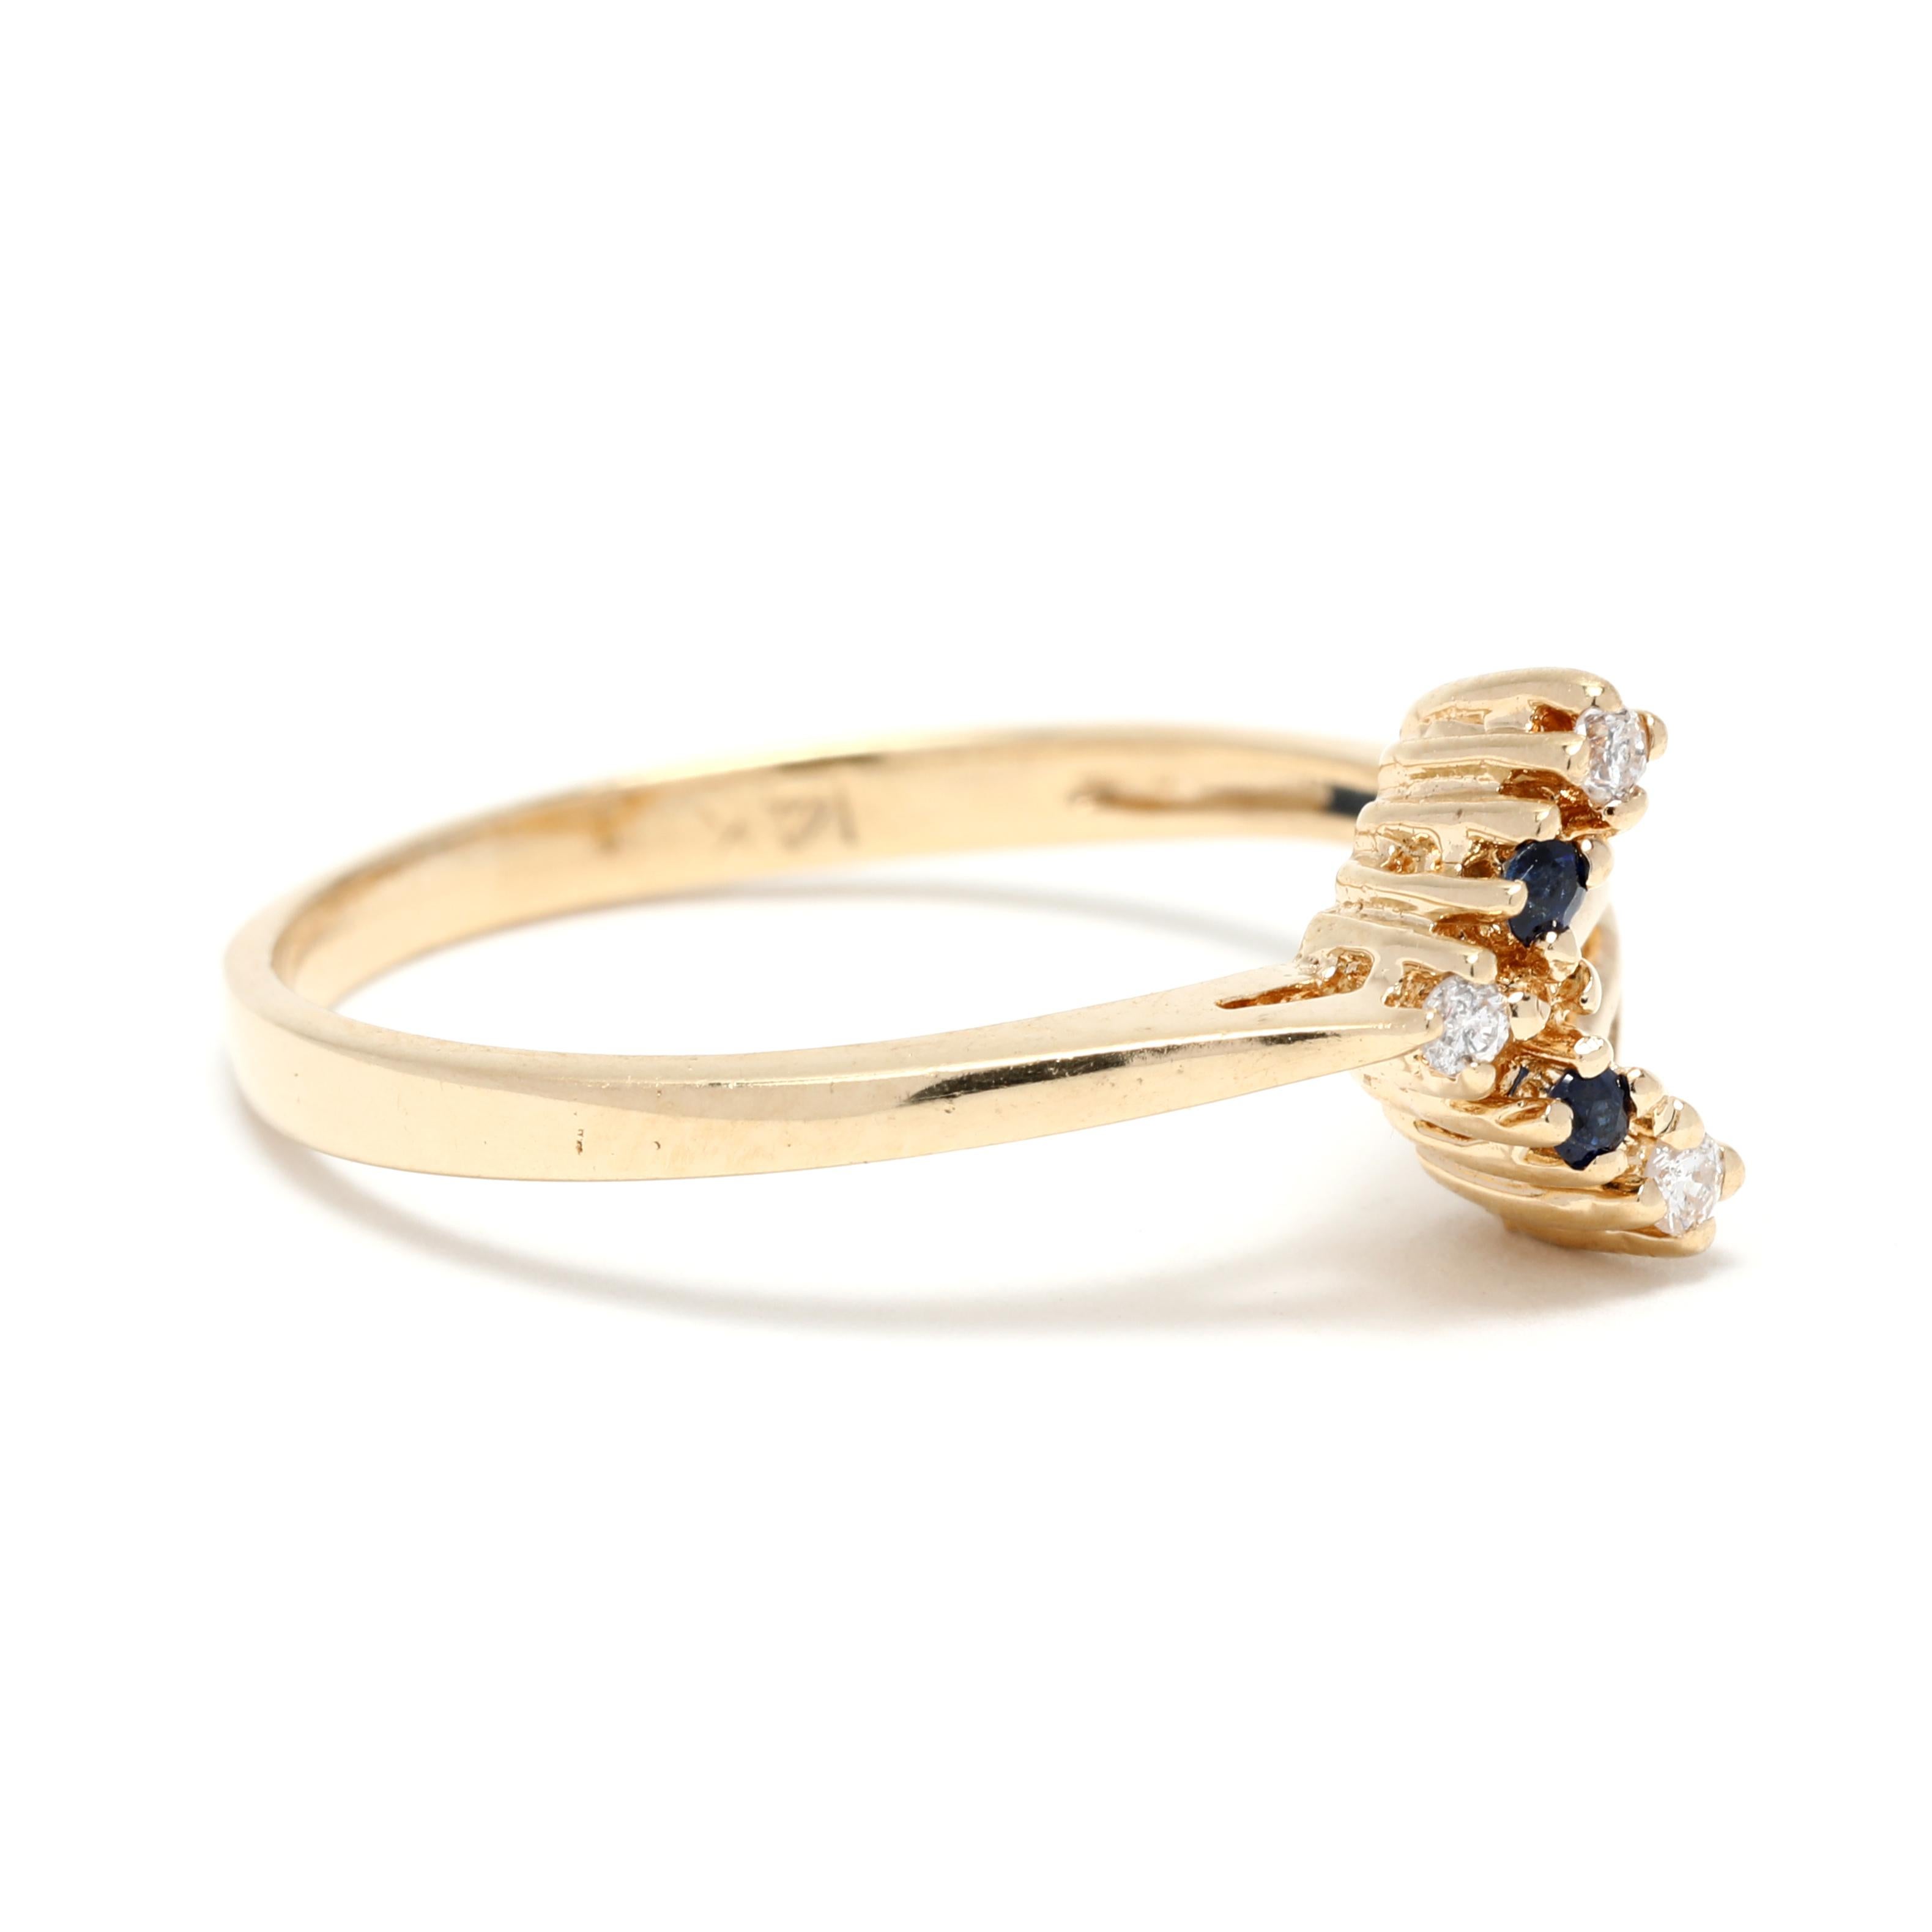 Dieser 0,07ctw Natural Sapphire Diamond Arrow Ring ist das perfekte Accessoire für den modernen Minimalisten. Dieser schöne und schlichte V-förmige Ring aus 14-karätigem Gelbgold zeigt in der Mitte einen diamantbesetzten Arrow, der von einem Halo